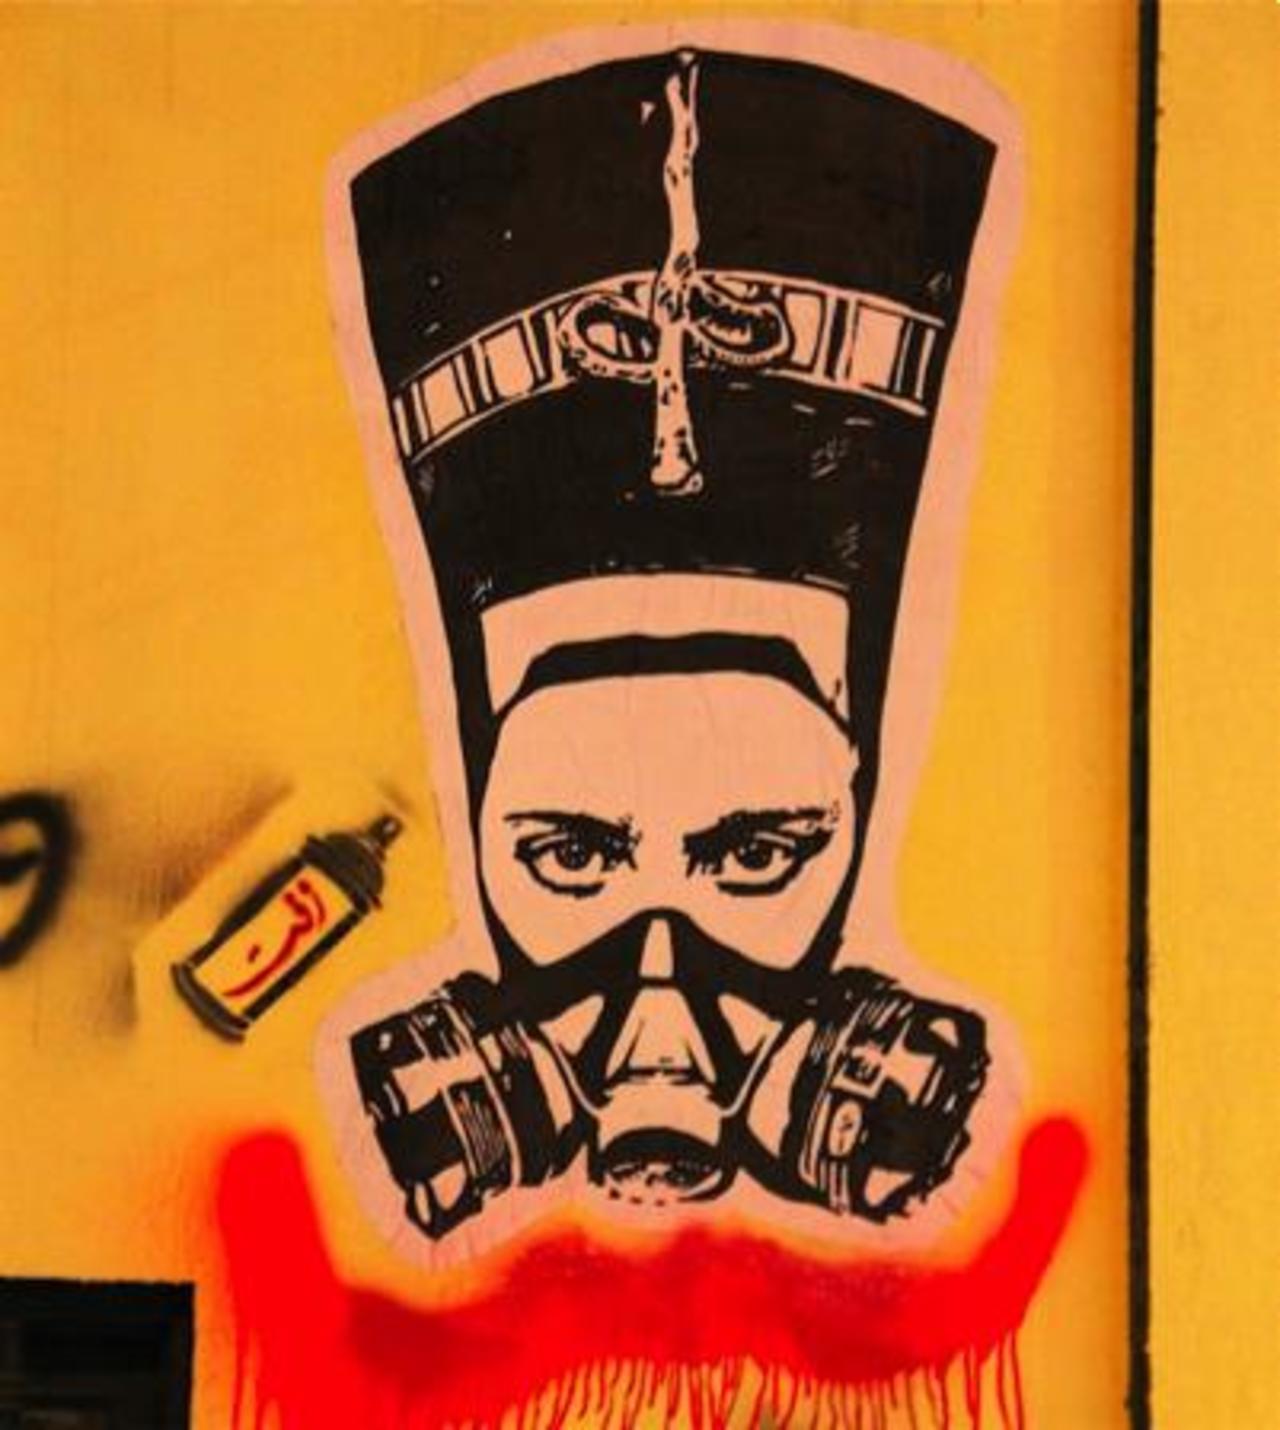 #art 
#streetart 
#graffiti # Egypt http://t.co/FmZlflkm2t